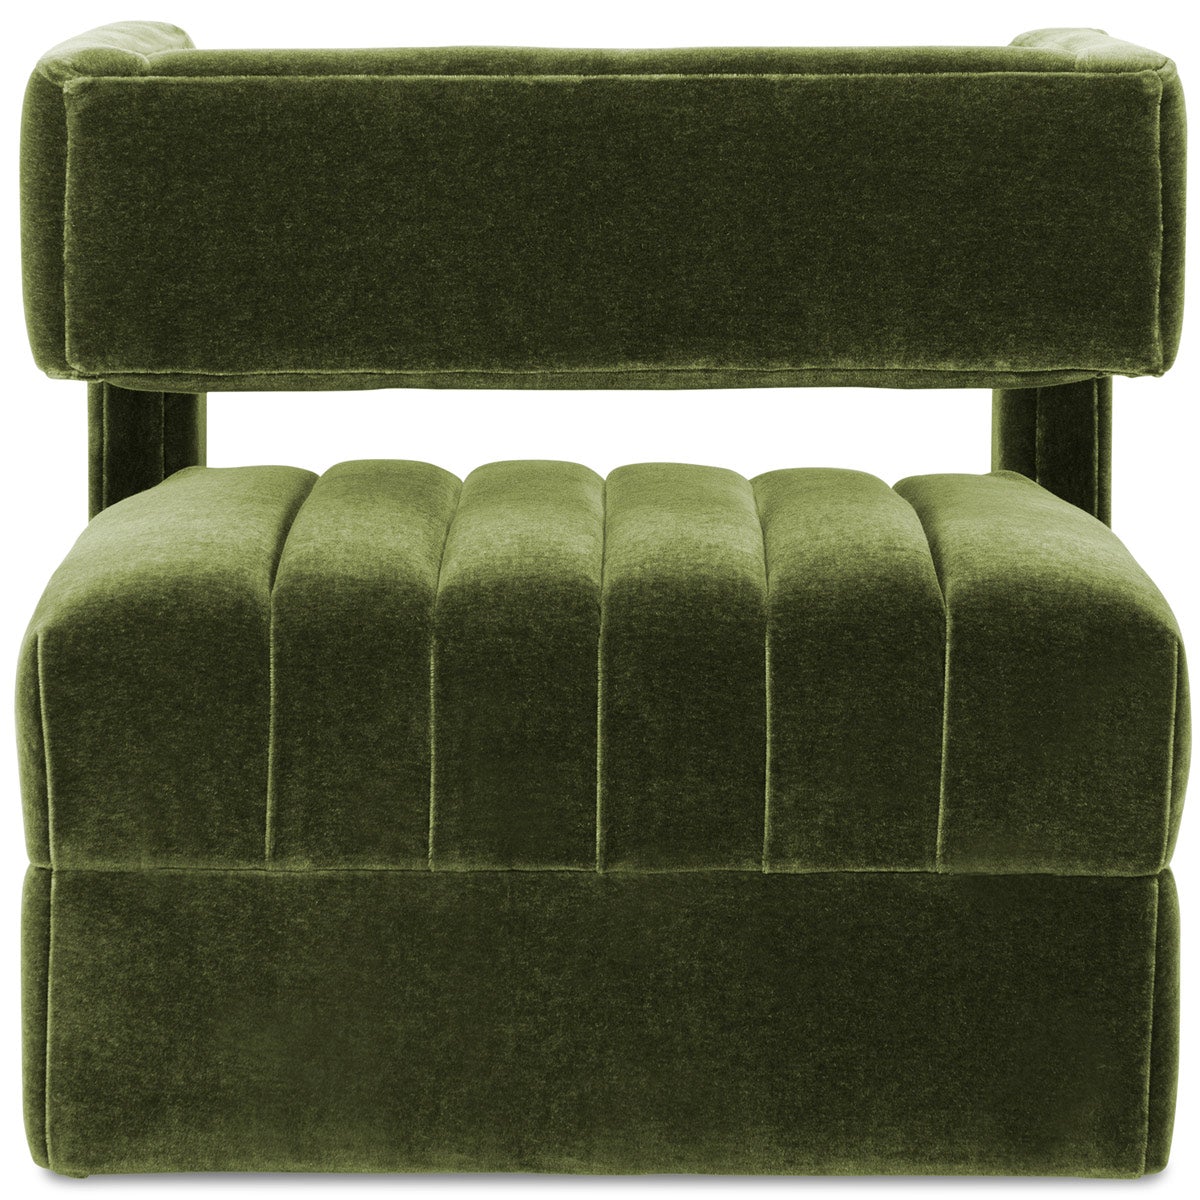 Studio 54 Occasional Chair - ModShop1.com